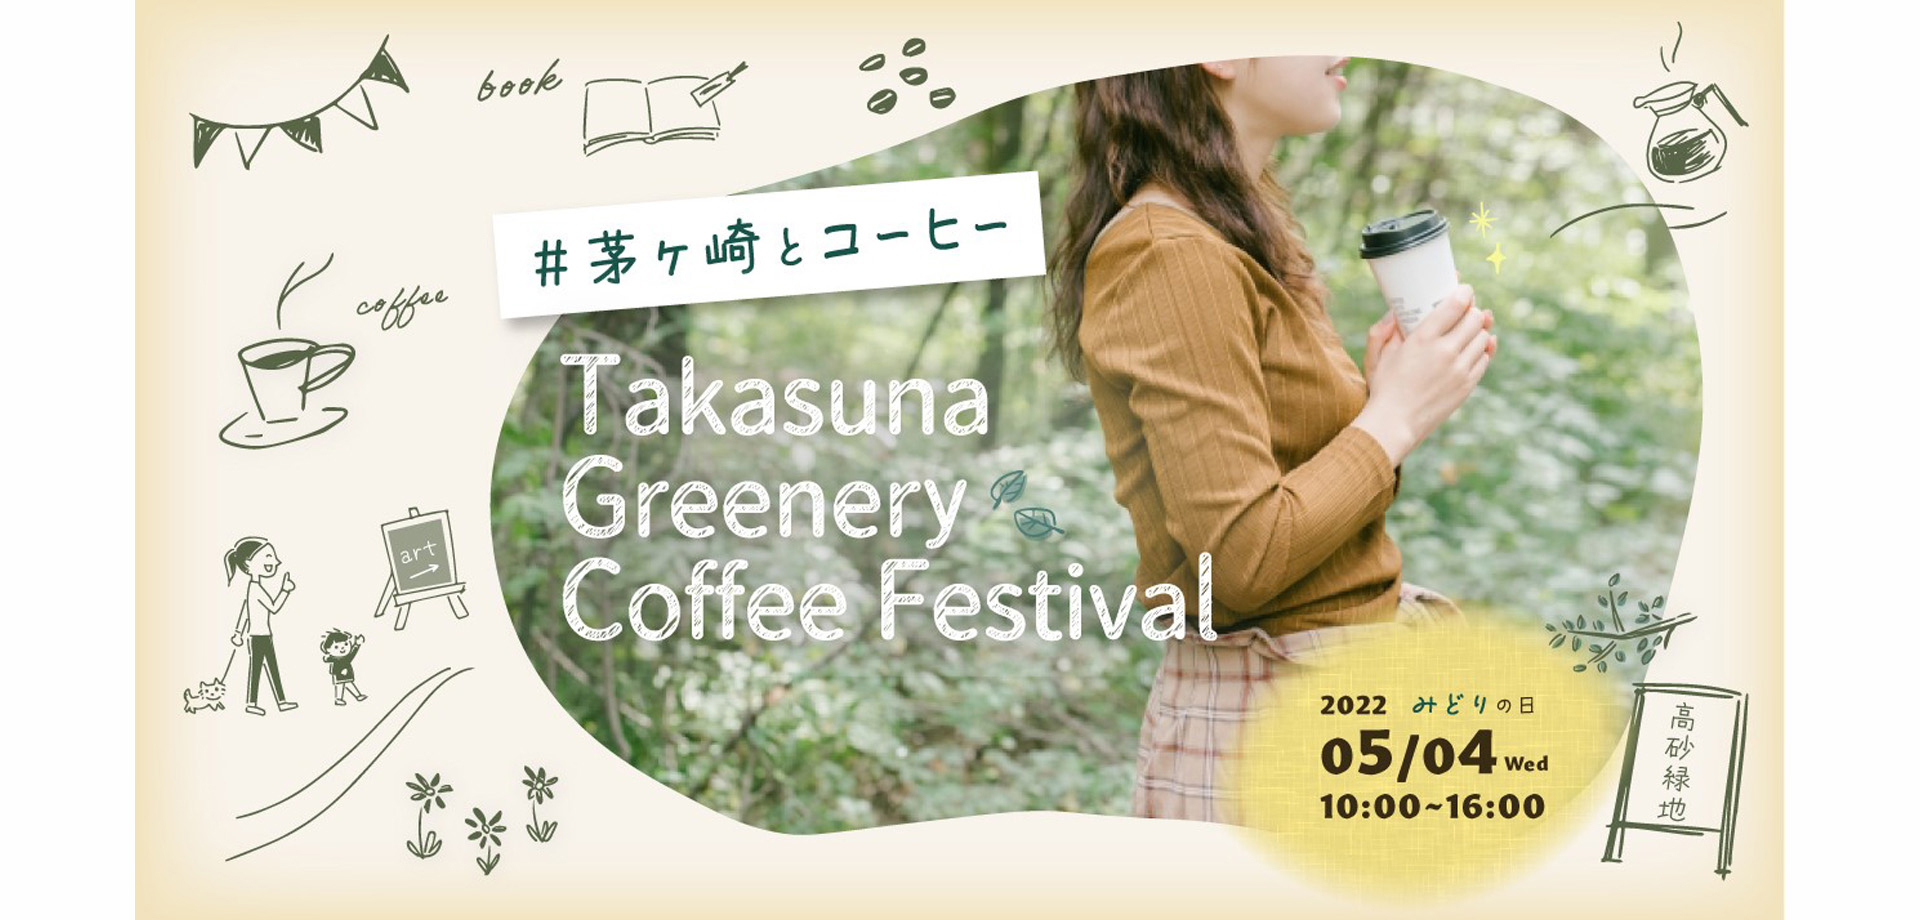 分散型のまち歩きコーヒーフェス「Takasuna Greenery Coffee Festival」